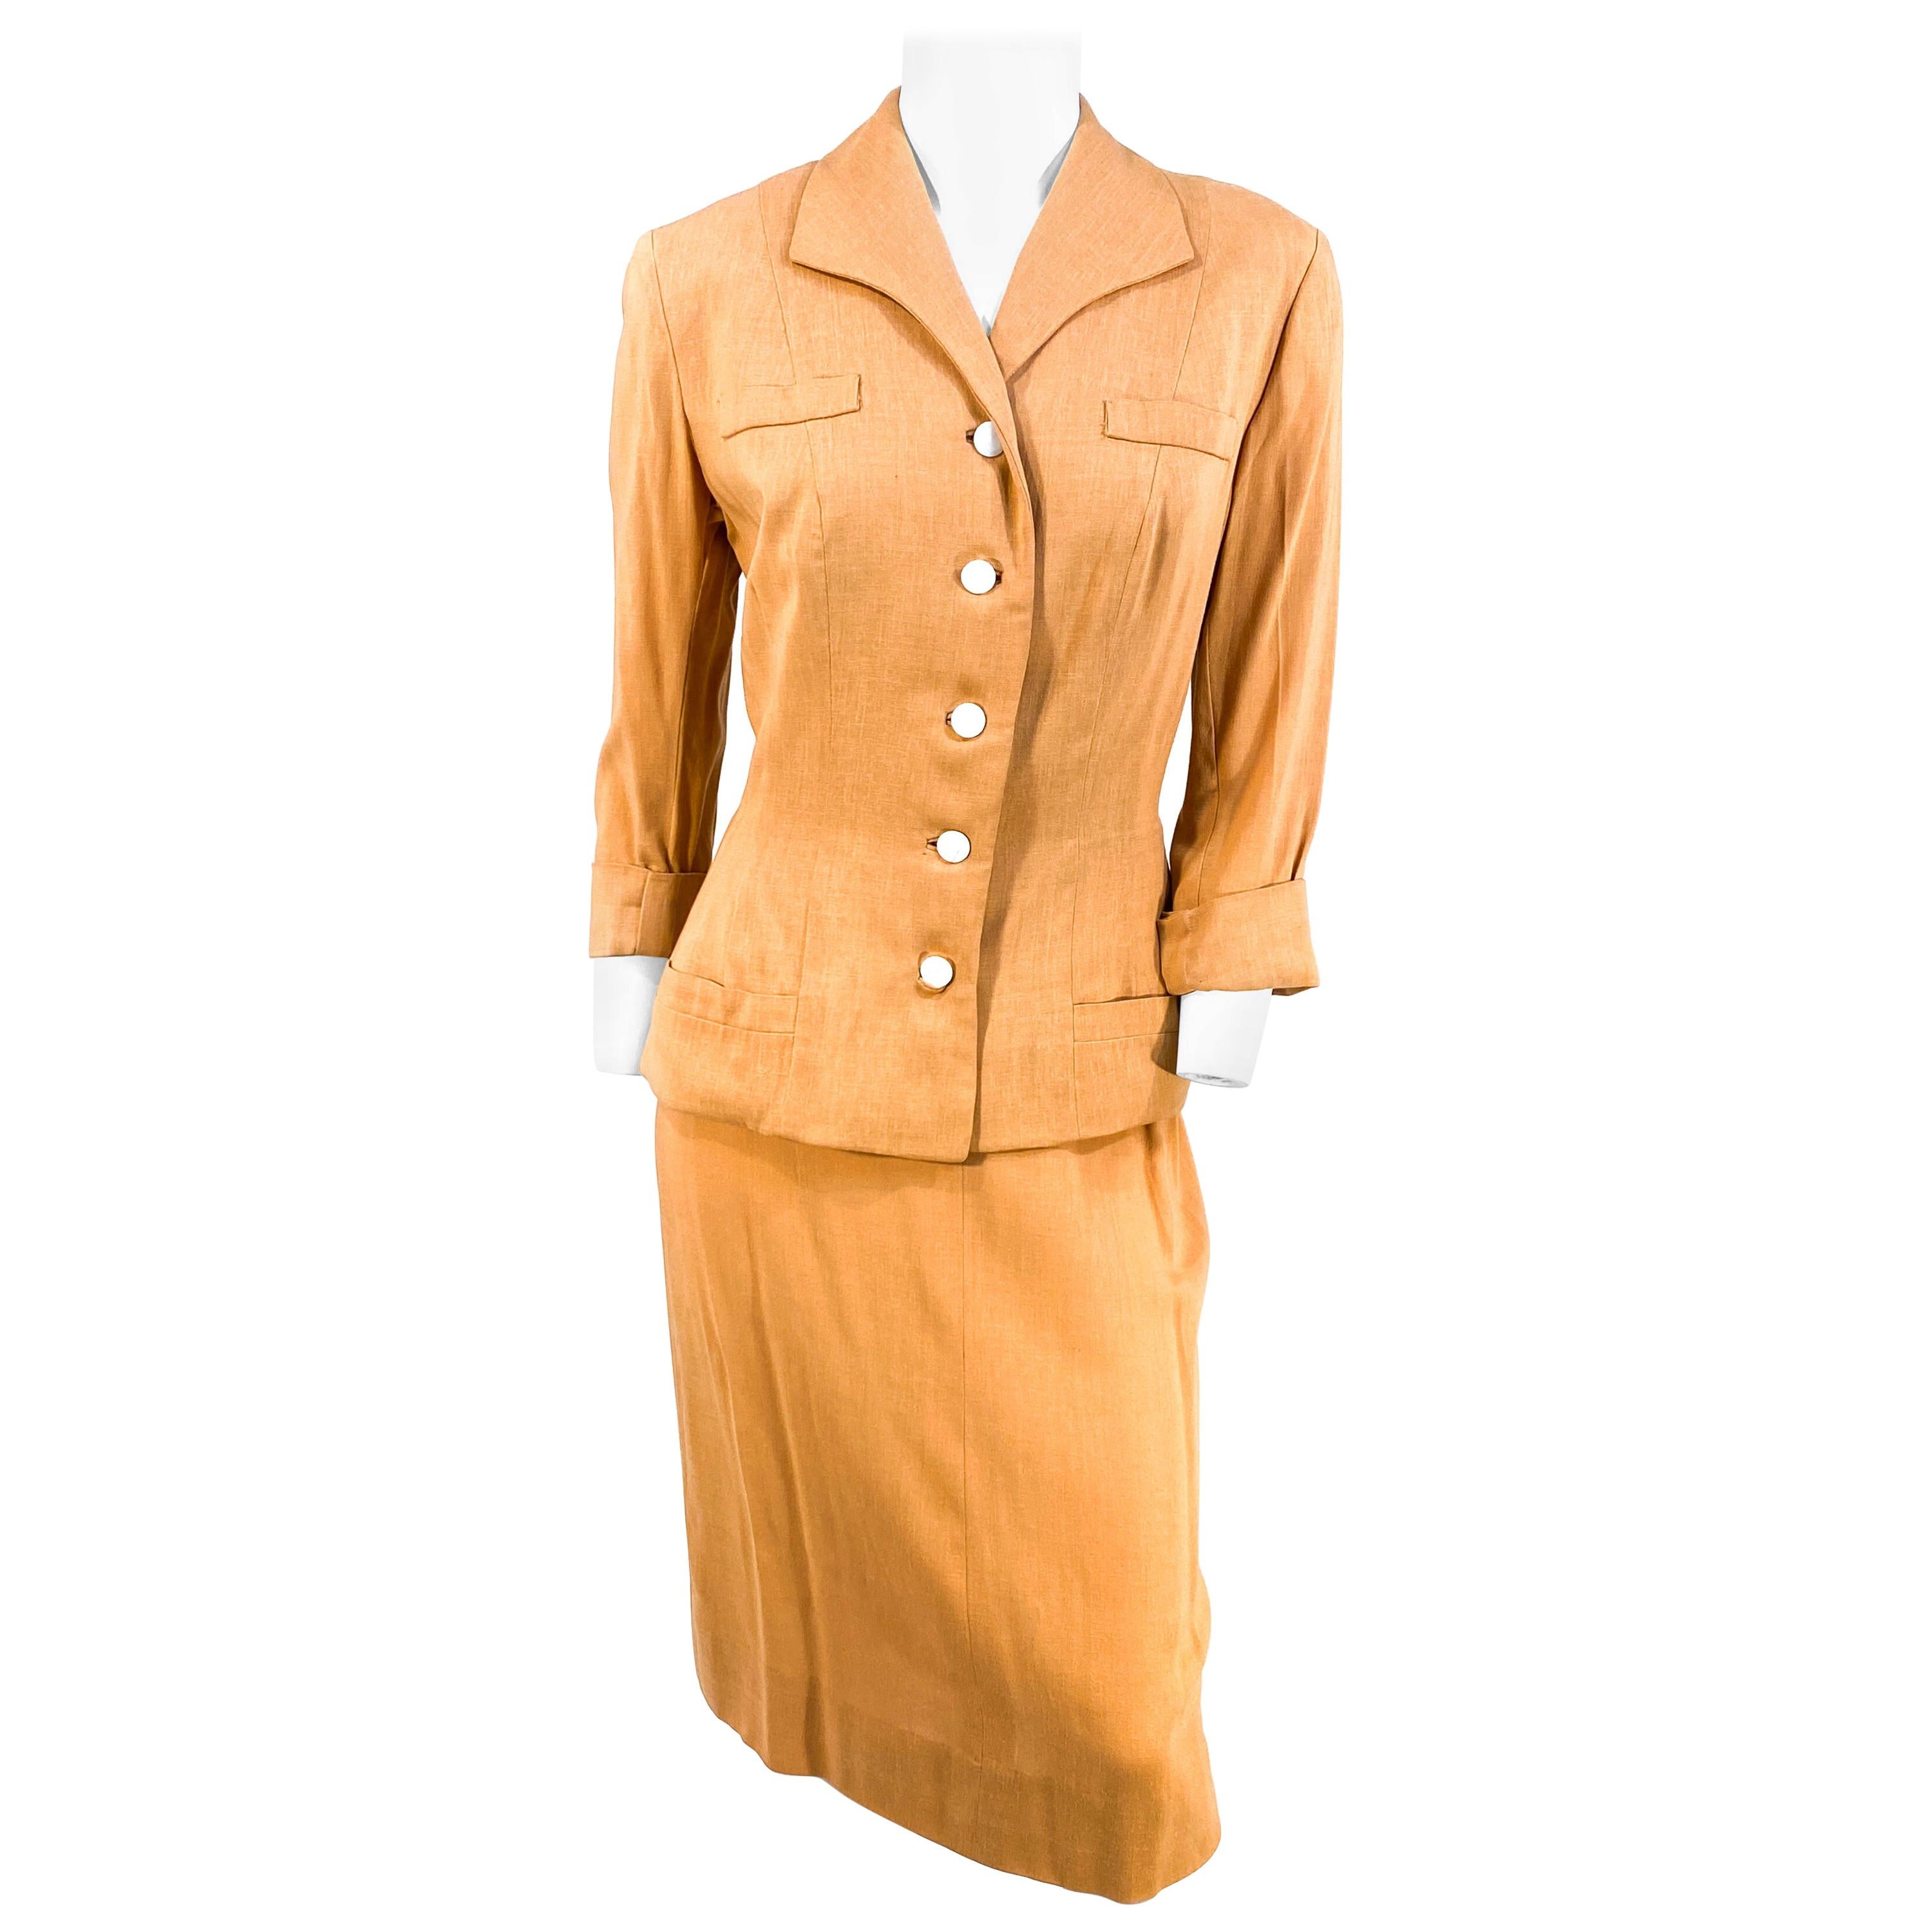 1950s Apricot Linen Suit